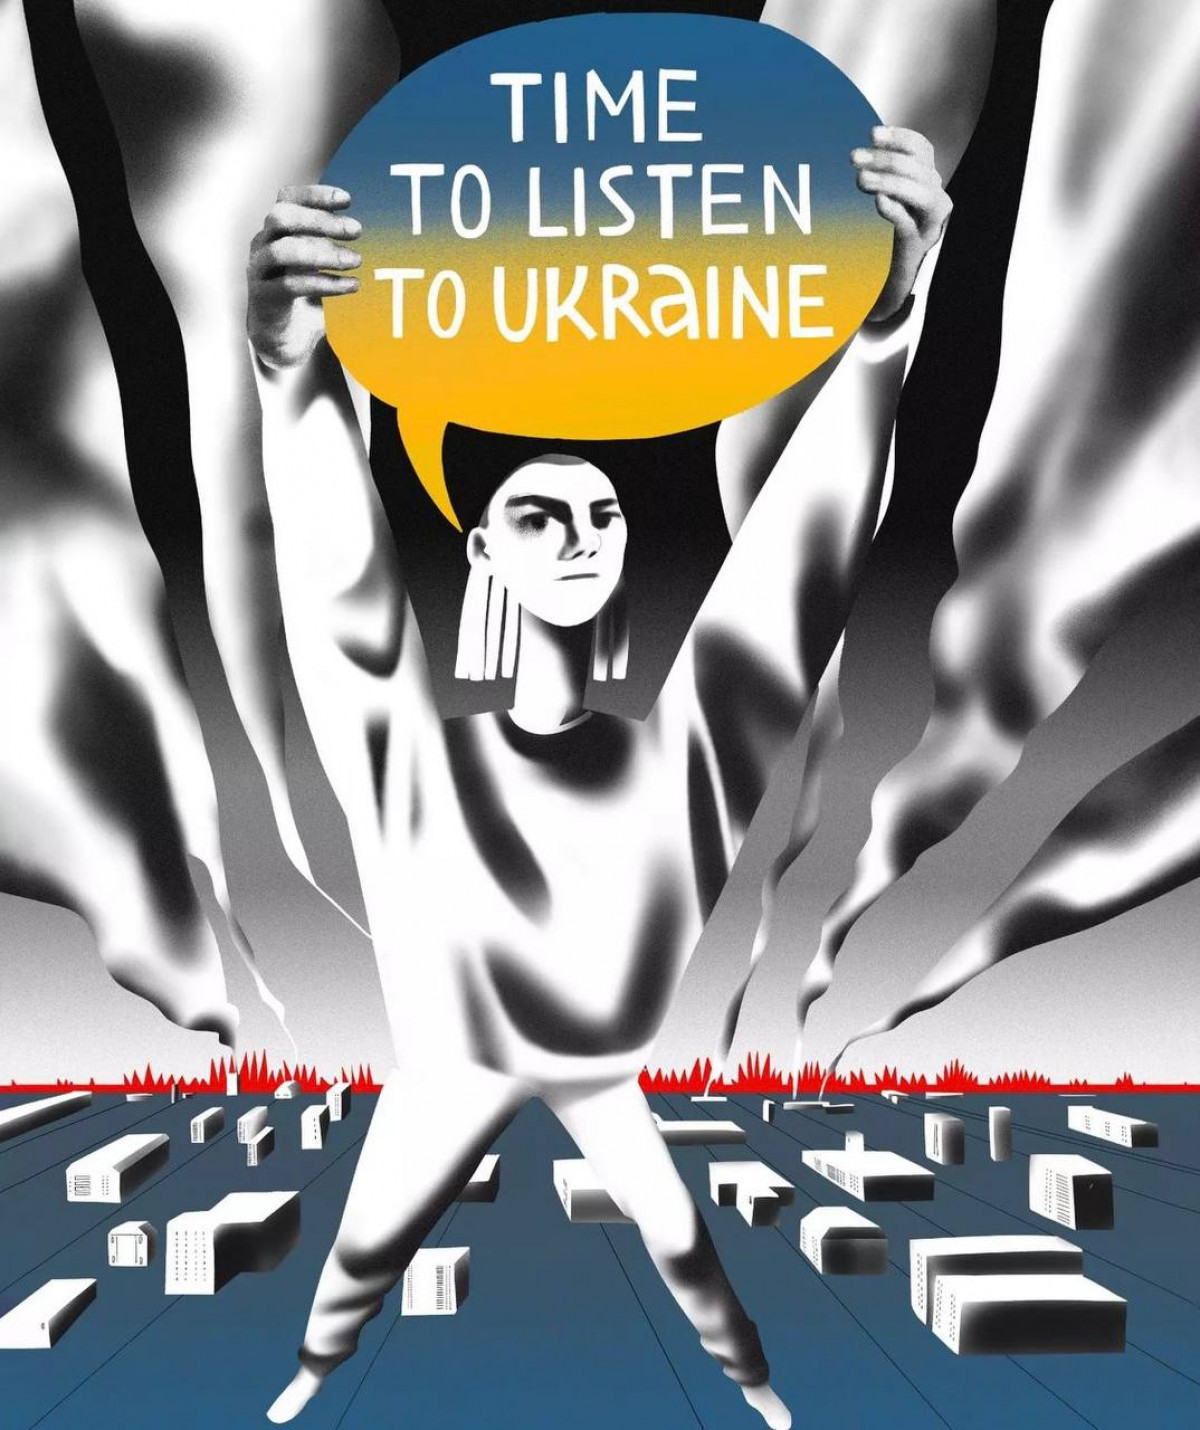 Ілюстрації на тему війни в Україні